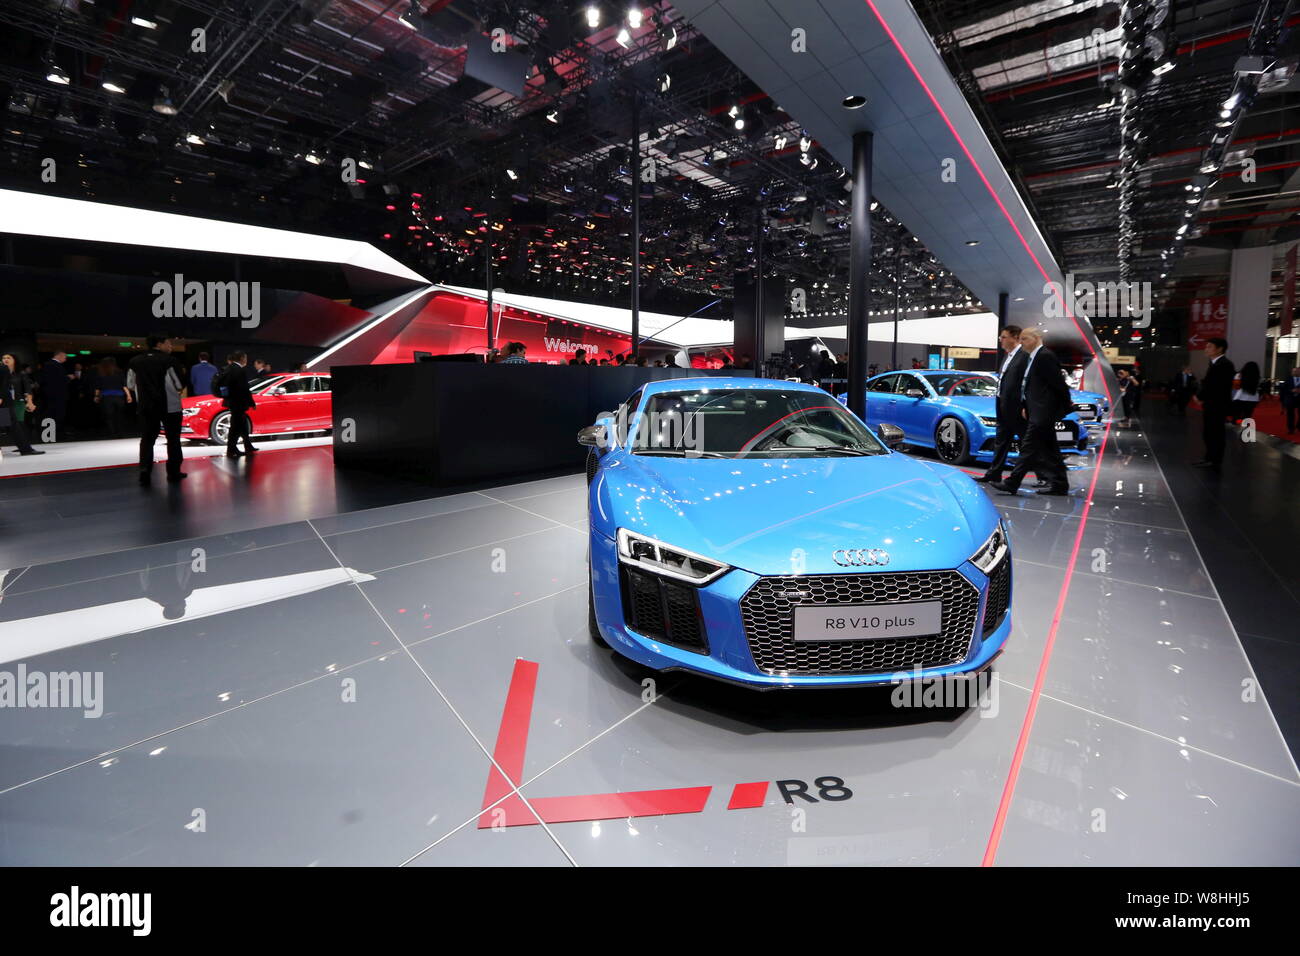 Une Audi R8 V10 plus et d'autres voitures Audi sont sur l'affichage lors du 16ème Salon International de l'Automobile International de Shanghai, également connu sous le nom de Shang Auto Banque D'Images